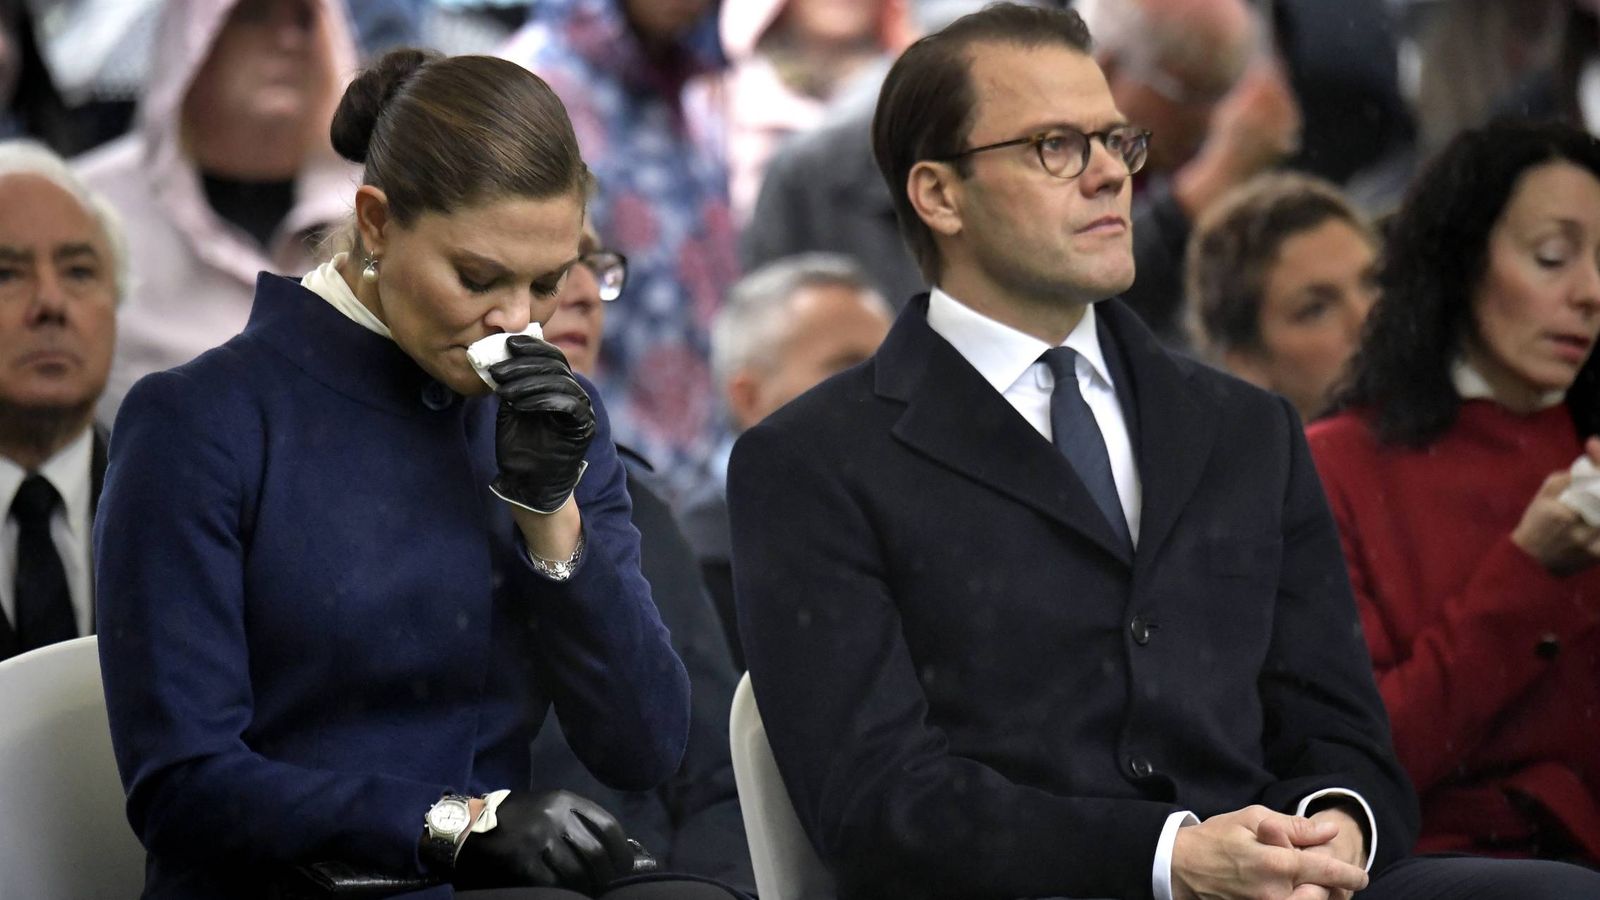 Foto: Victoria de Suecia junto a su marido, el príncipe Daniel, sin poder contener las lágrimas. (Cordon Press)